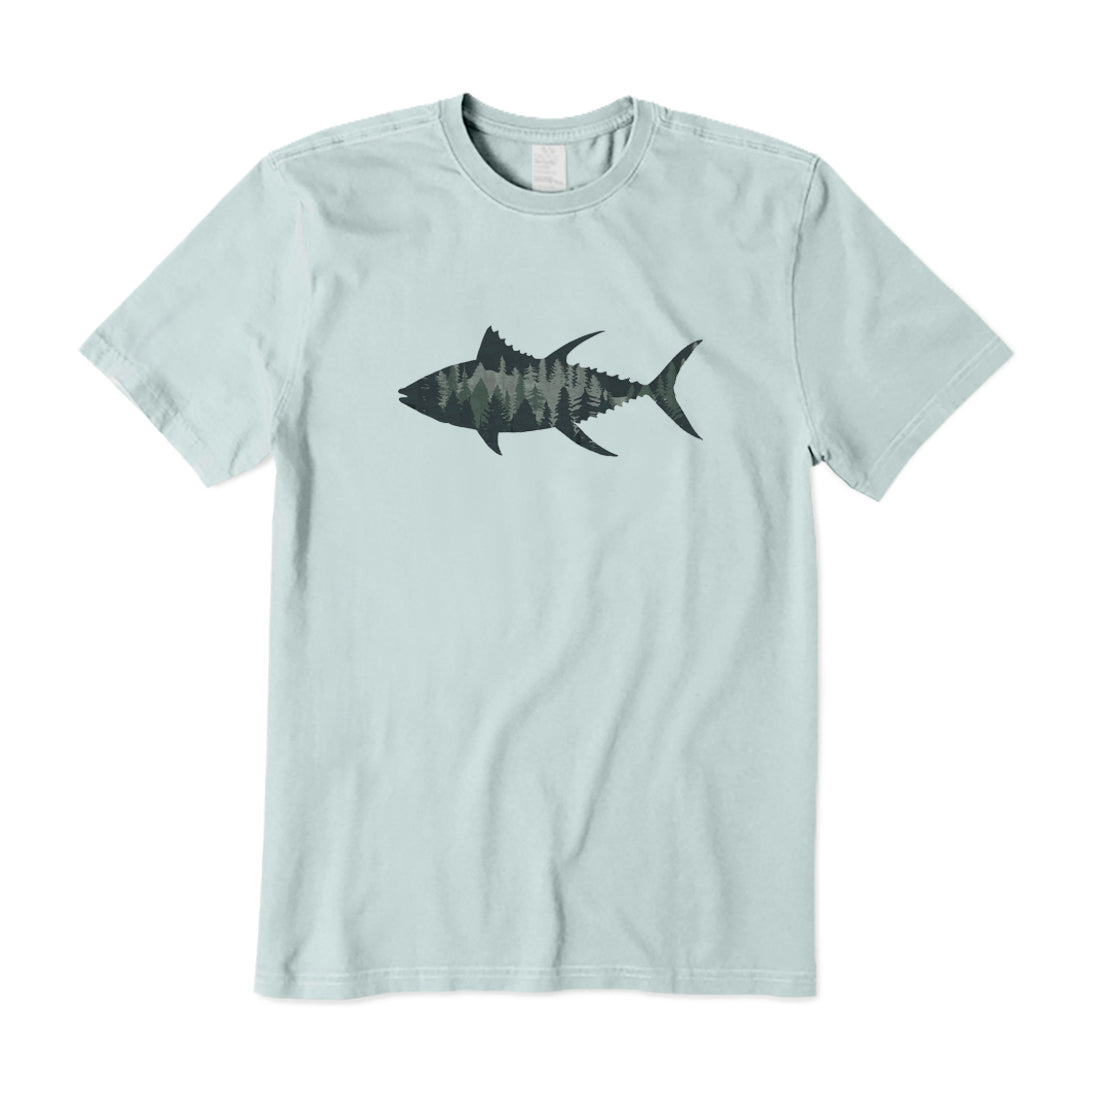 Fish Landscape T-Shirt